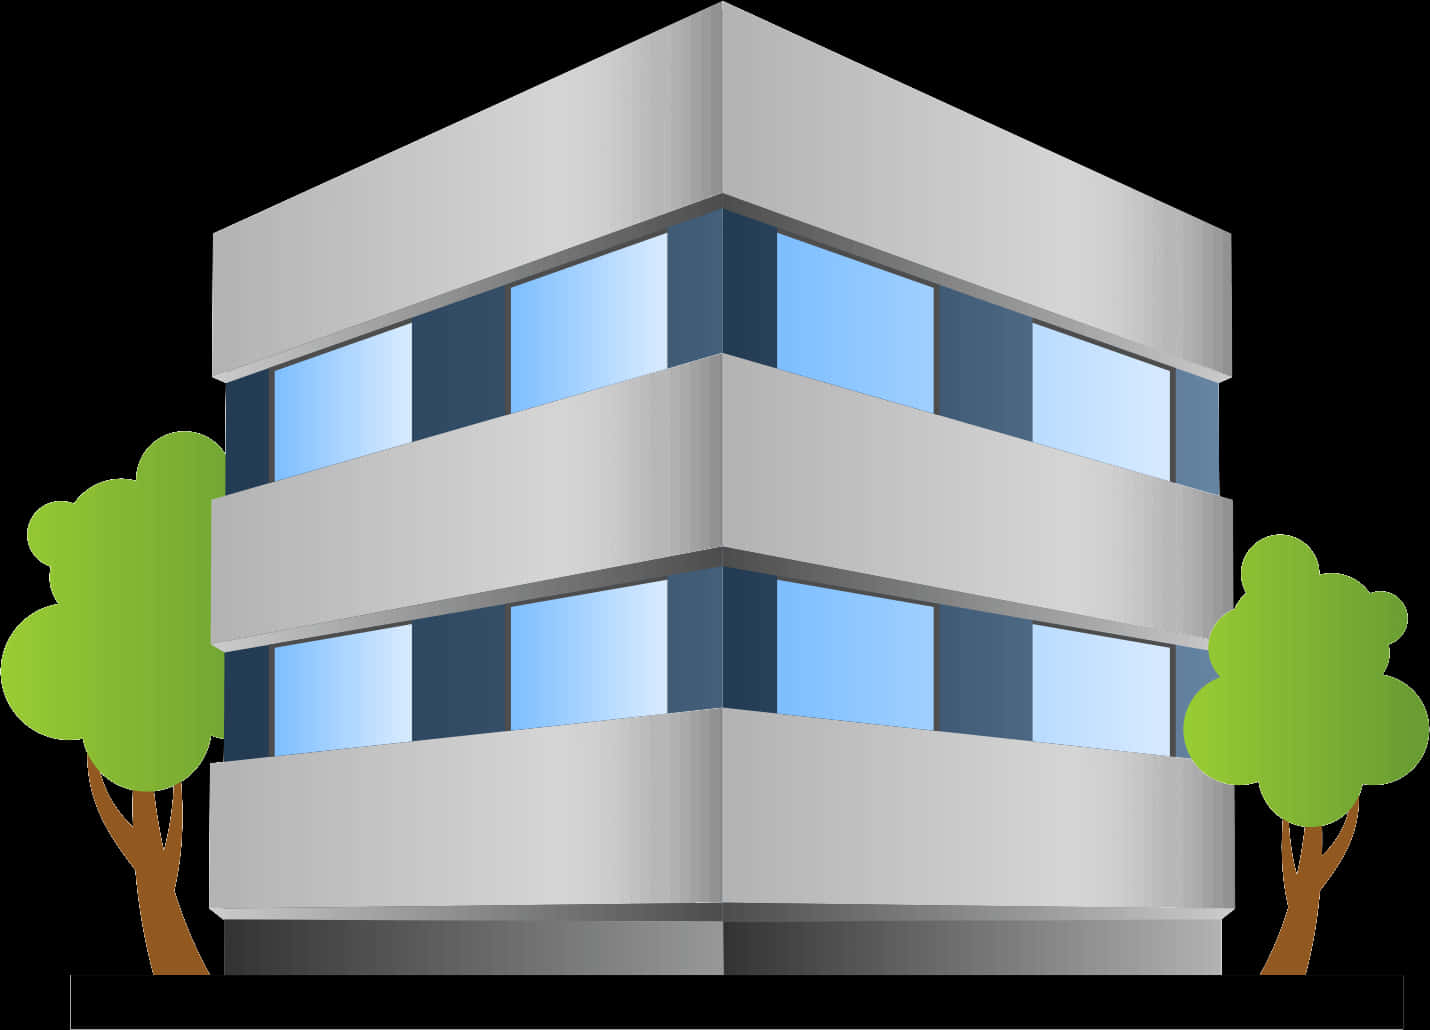 Modern Office Building Vector Illustration